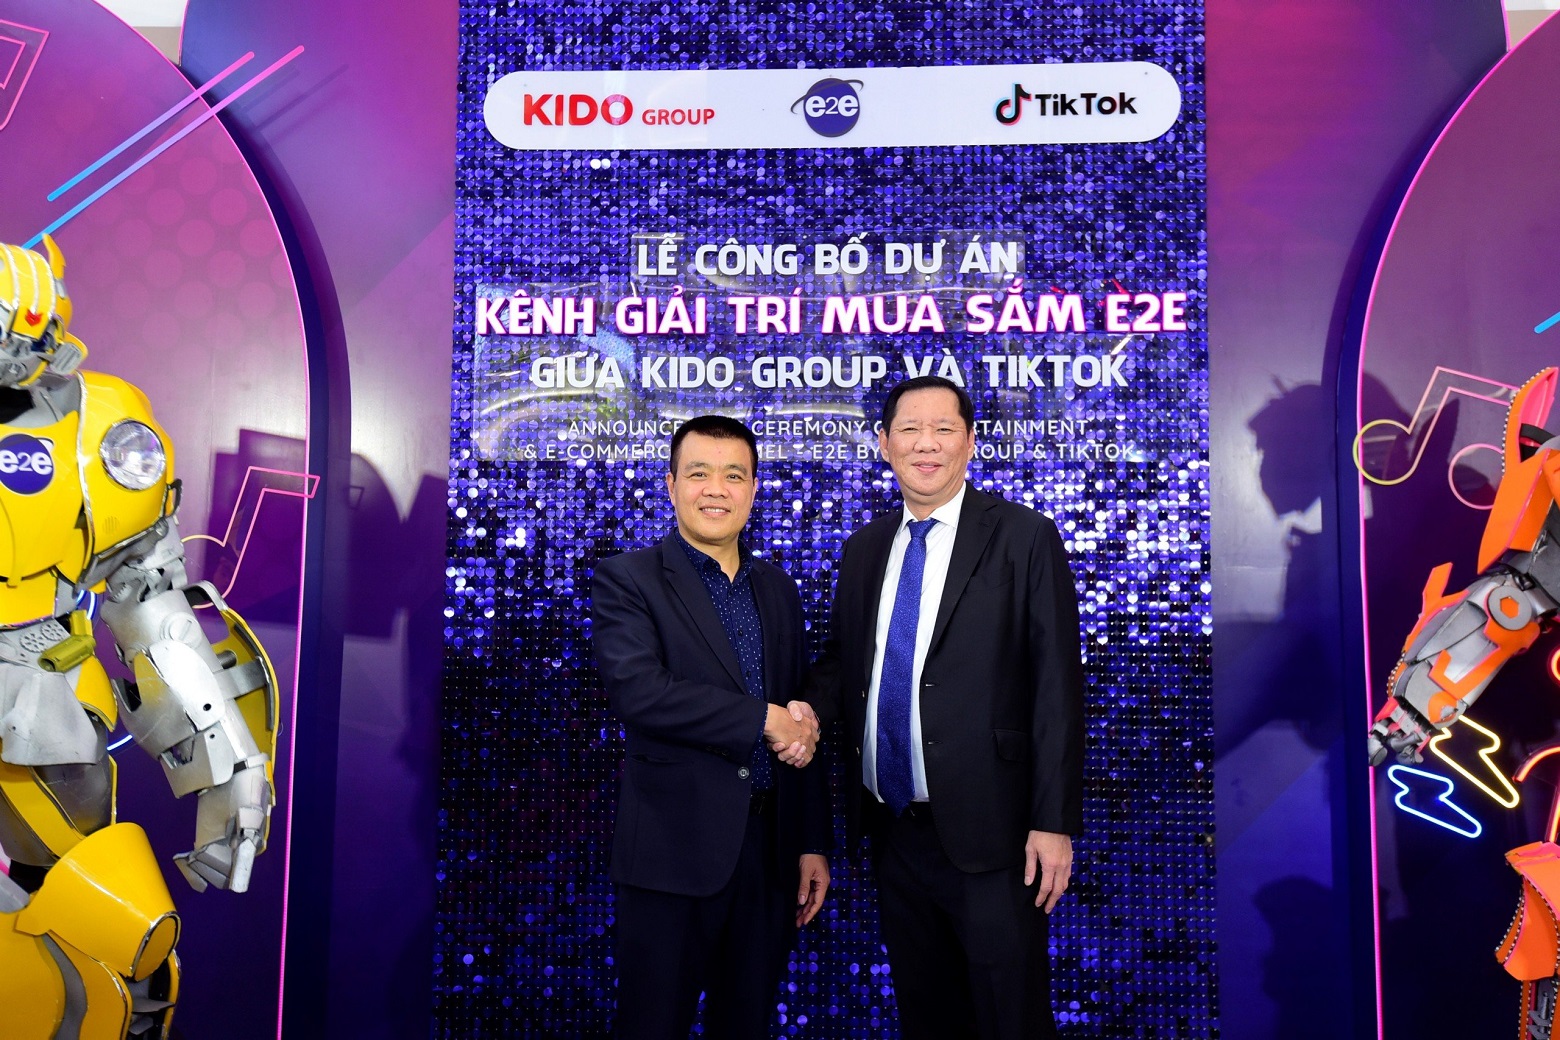 KIDO công bố kênh mua trí giải sắm trên TikTok nhằm kích hoạt tiêu dùng - Ảnh 1.